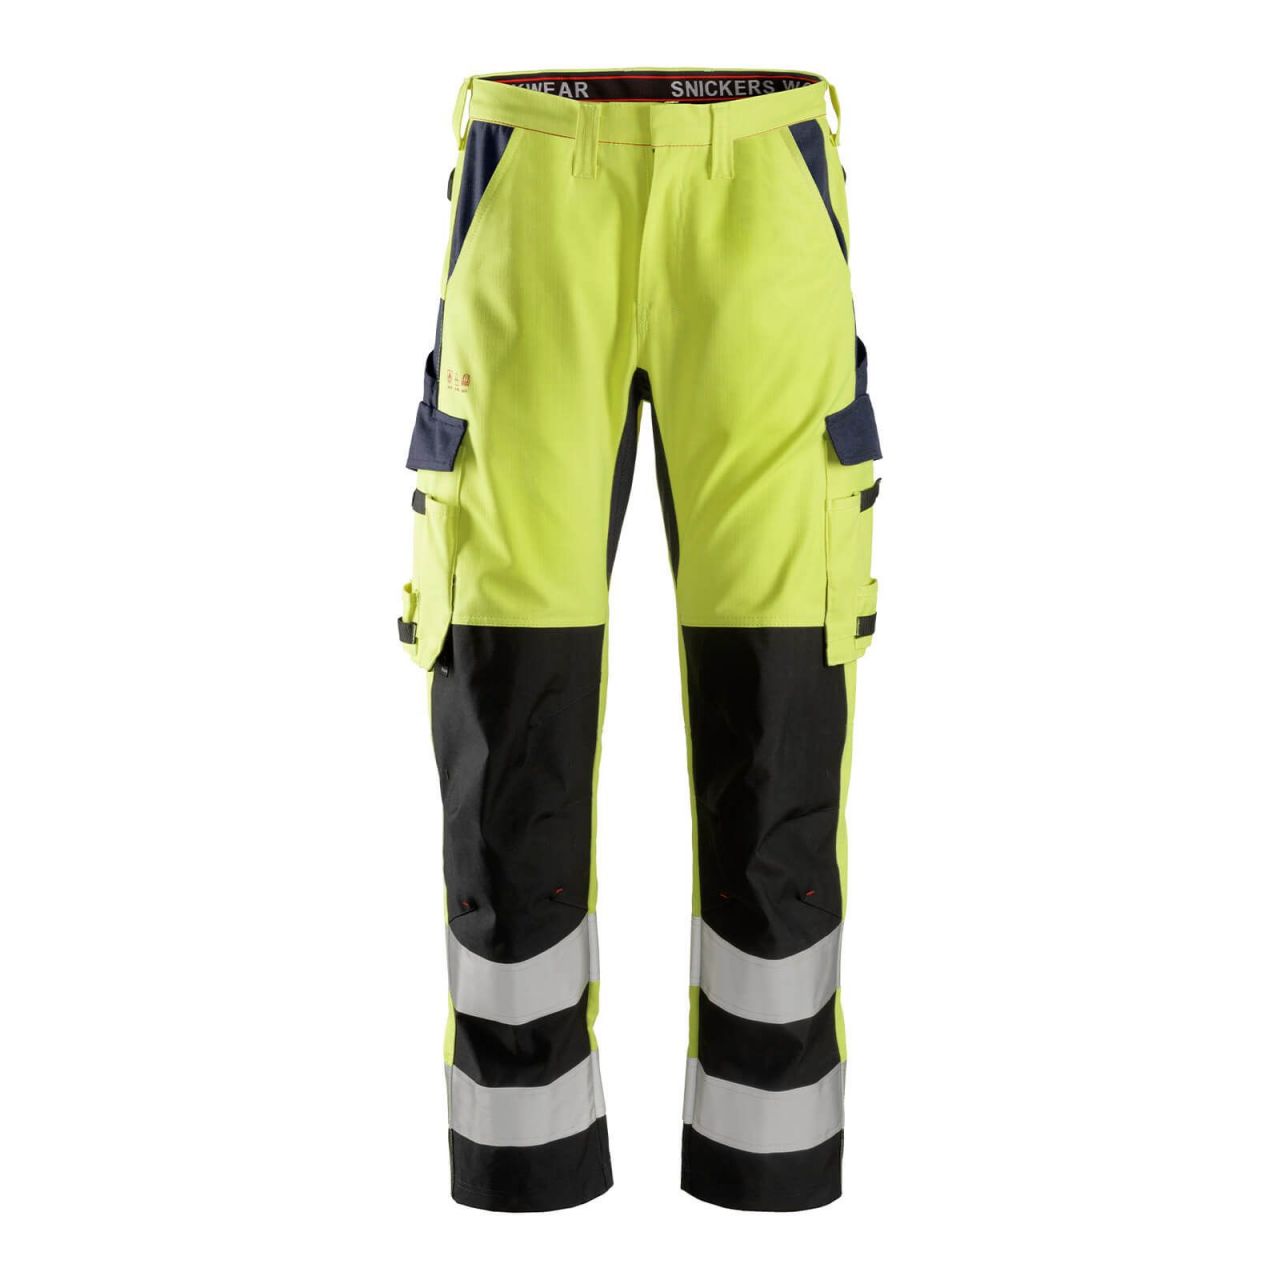 6364 Pantalones largos de trabajo de alta visibilidad clase 2 con espinilla reforzada ProtecWork amarillo-azul marino talla 44